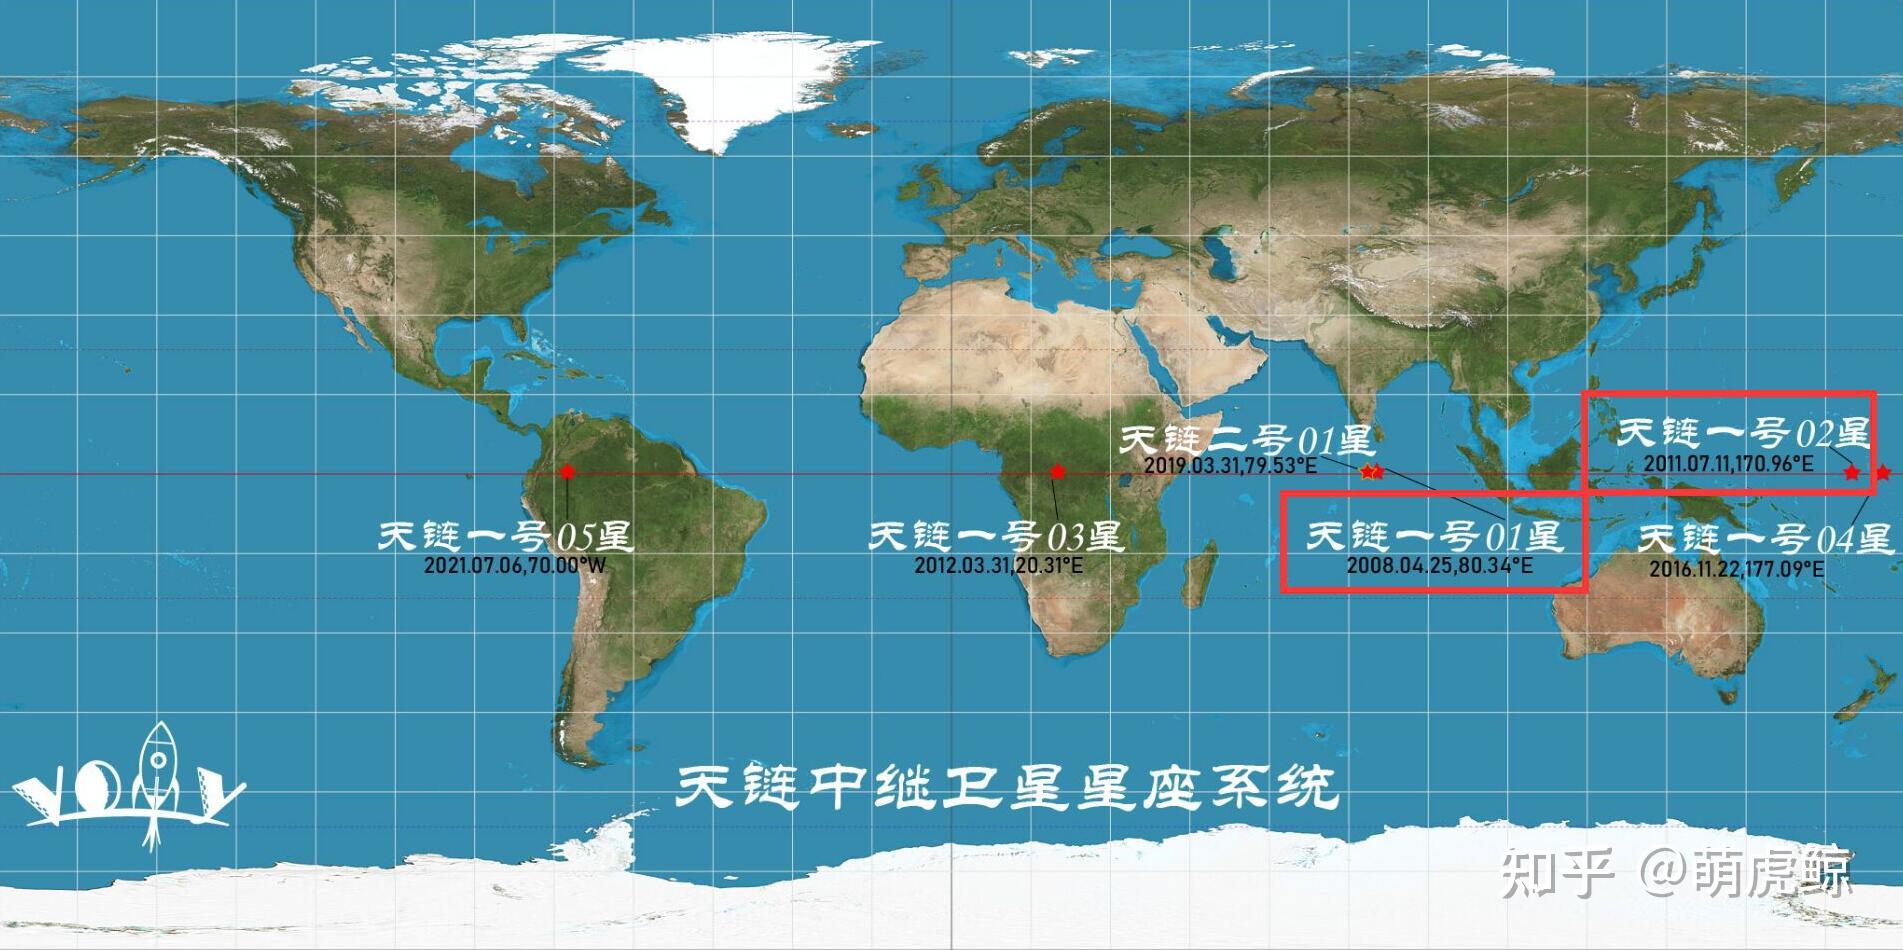 不要再吹马斯克星链计划，中国天链再上一层高楼，日本表示羡慕 - 哔哩哔哩